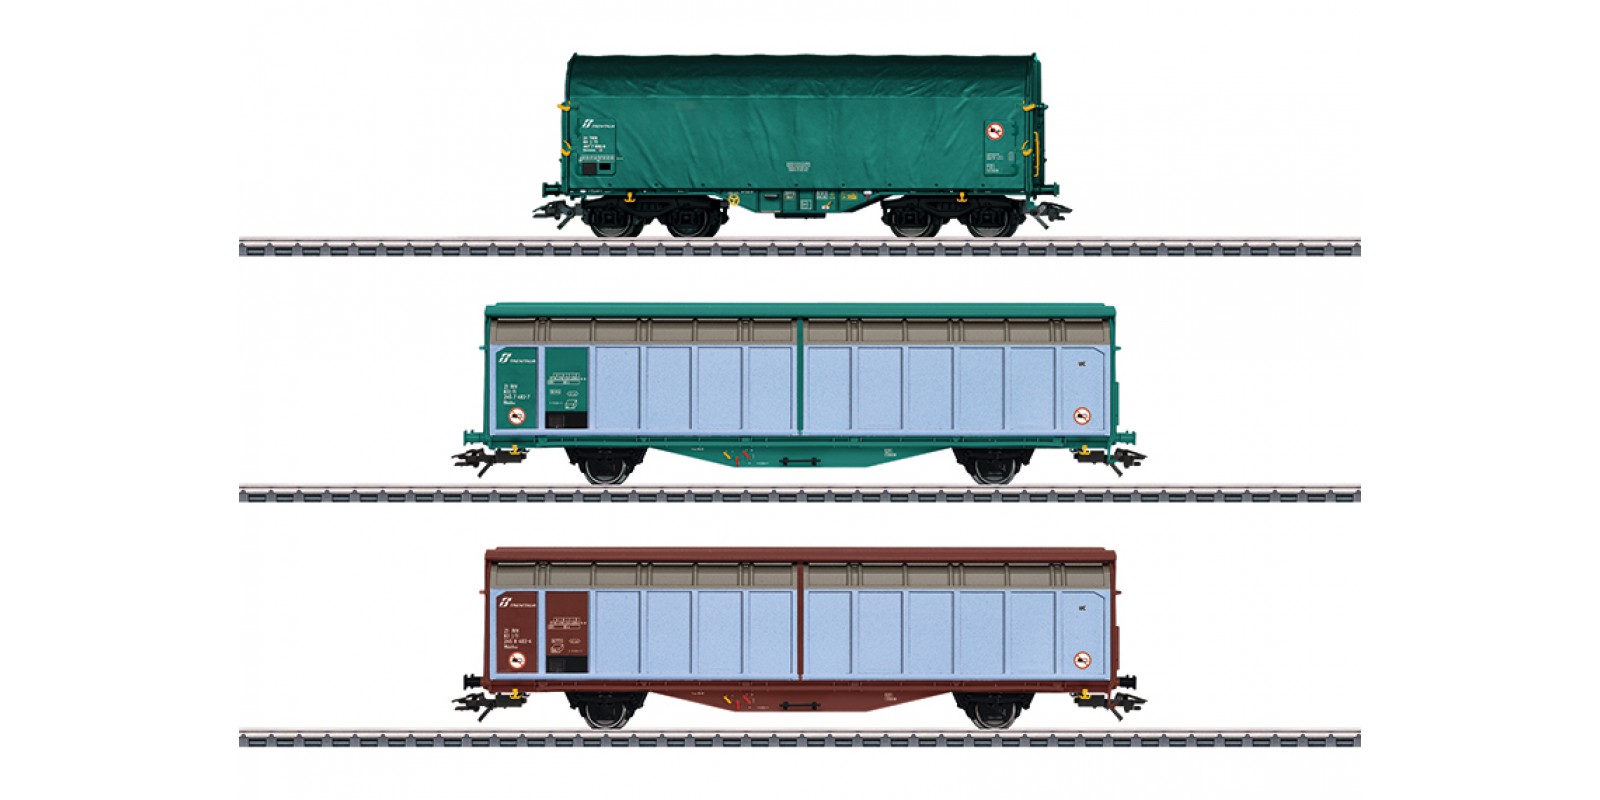 47871 "Italy Era VI" Freight Car Set